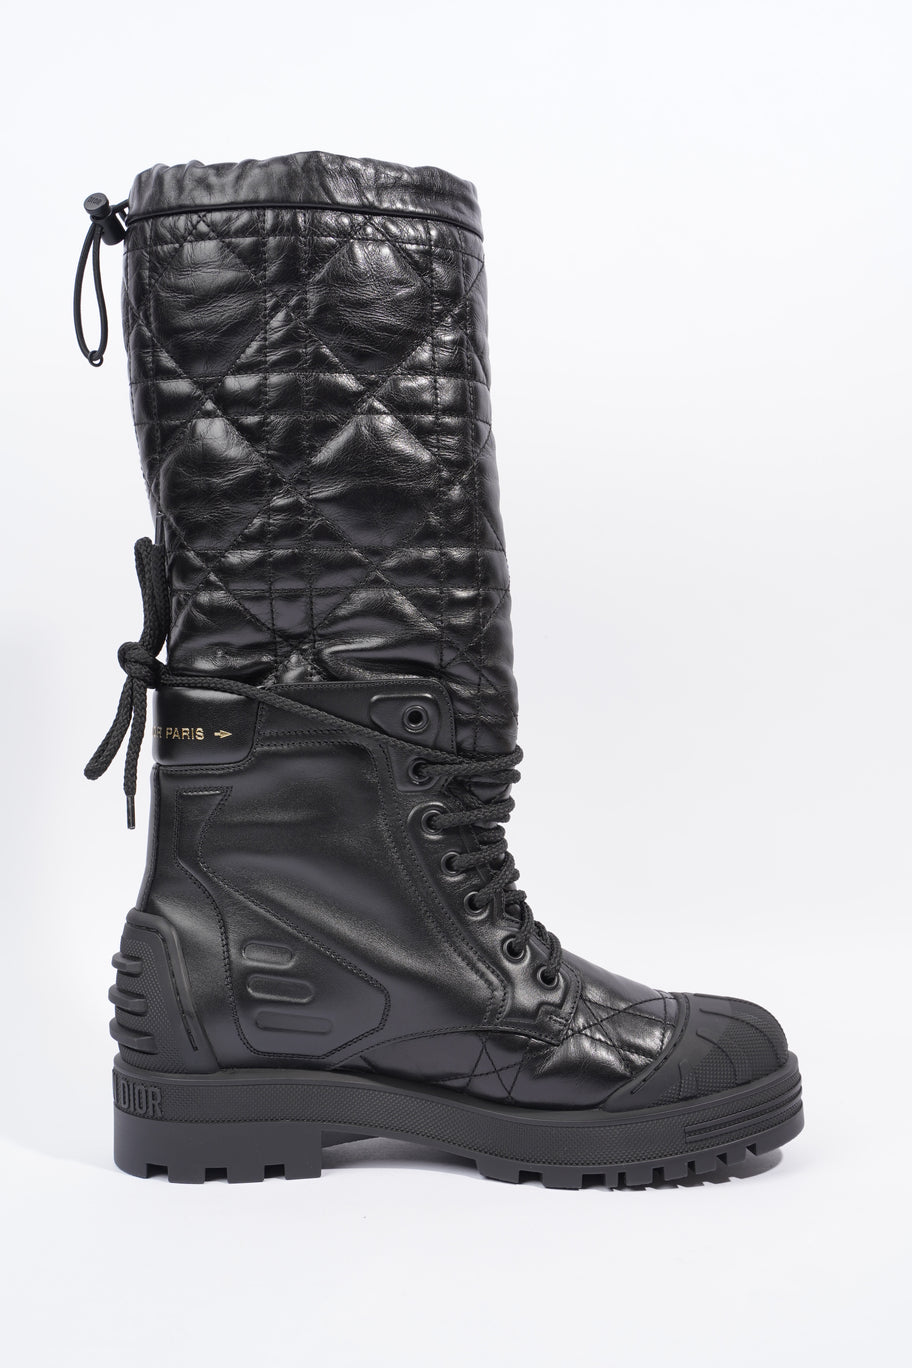 Boots Black Leather EU 39 UK 6 Image 4